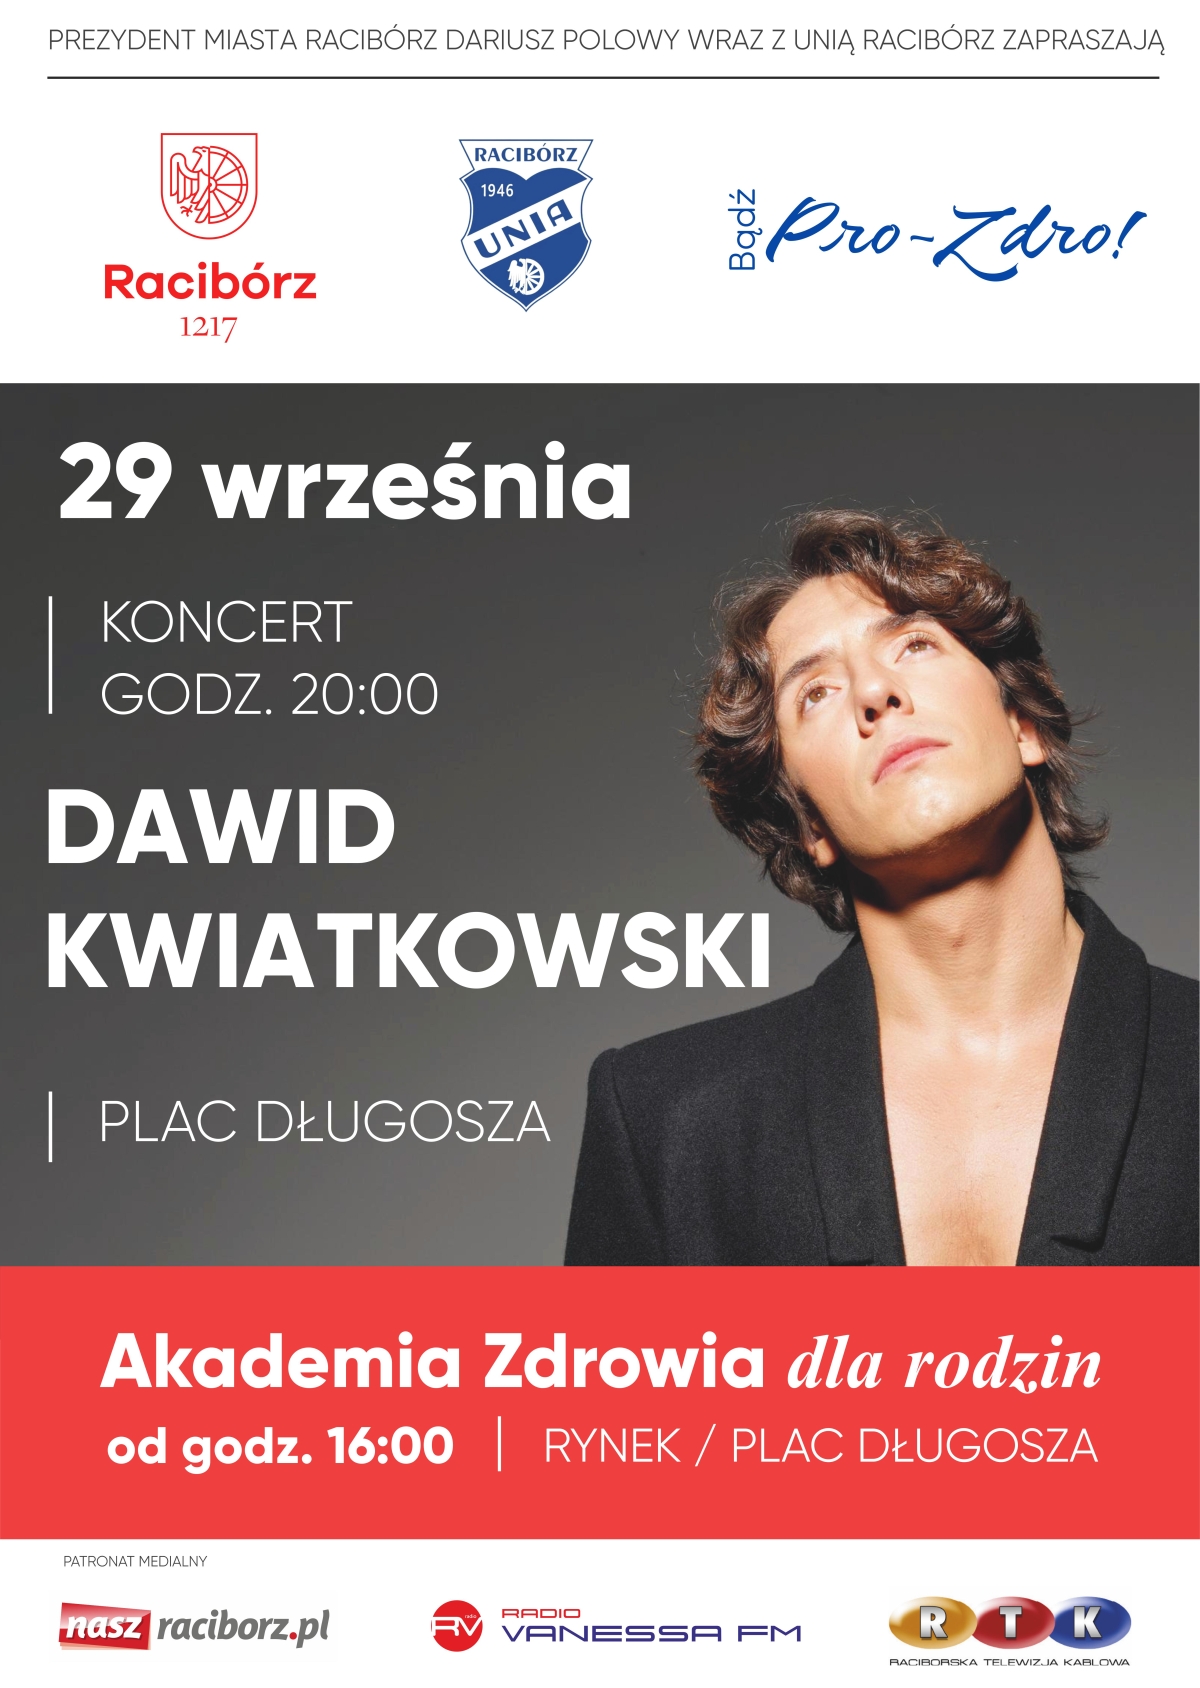 dawid_kwiatkowski-plakat_b2